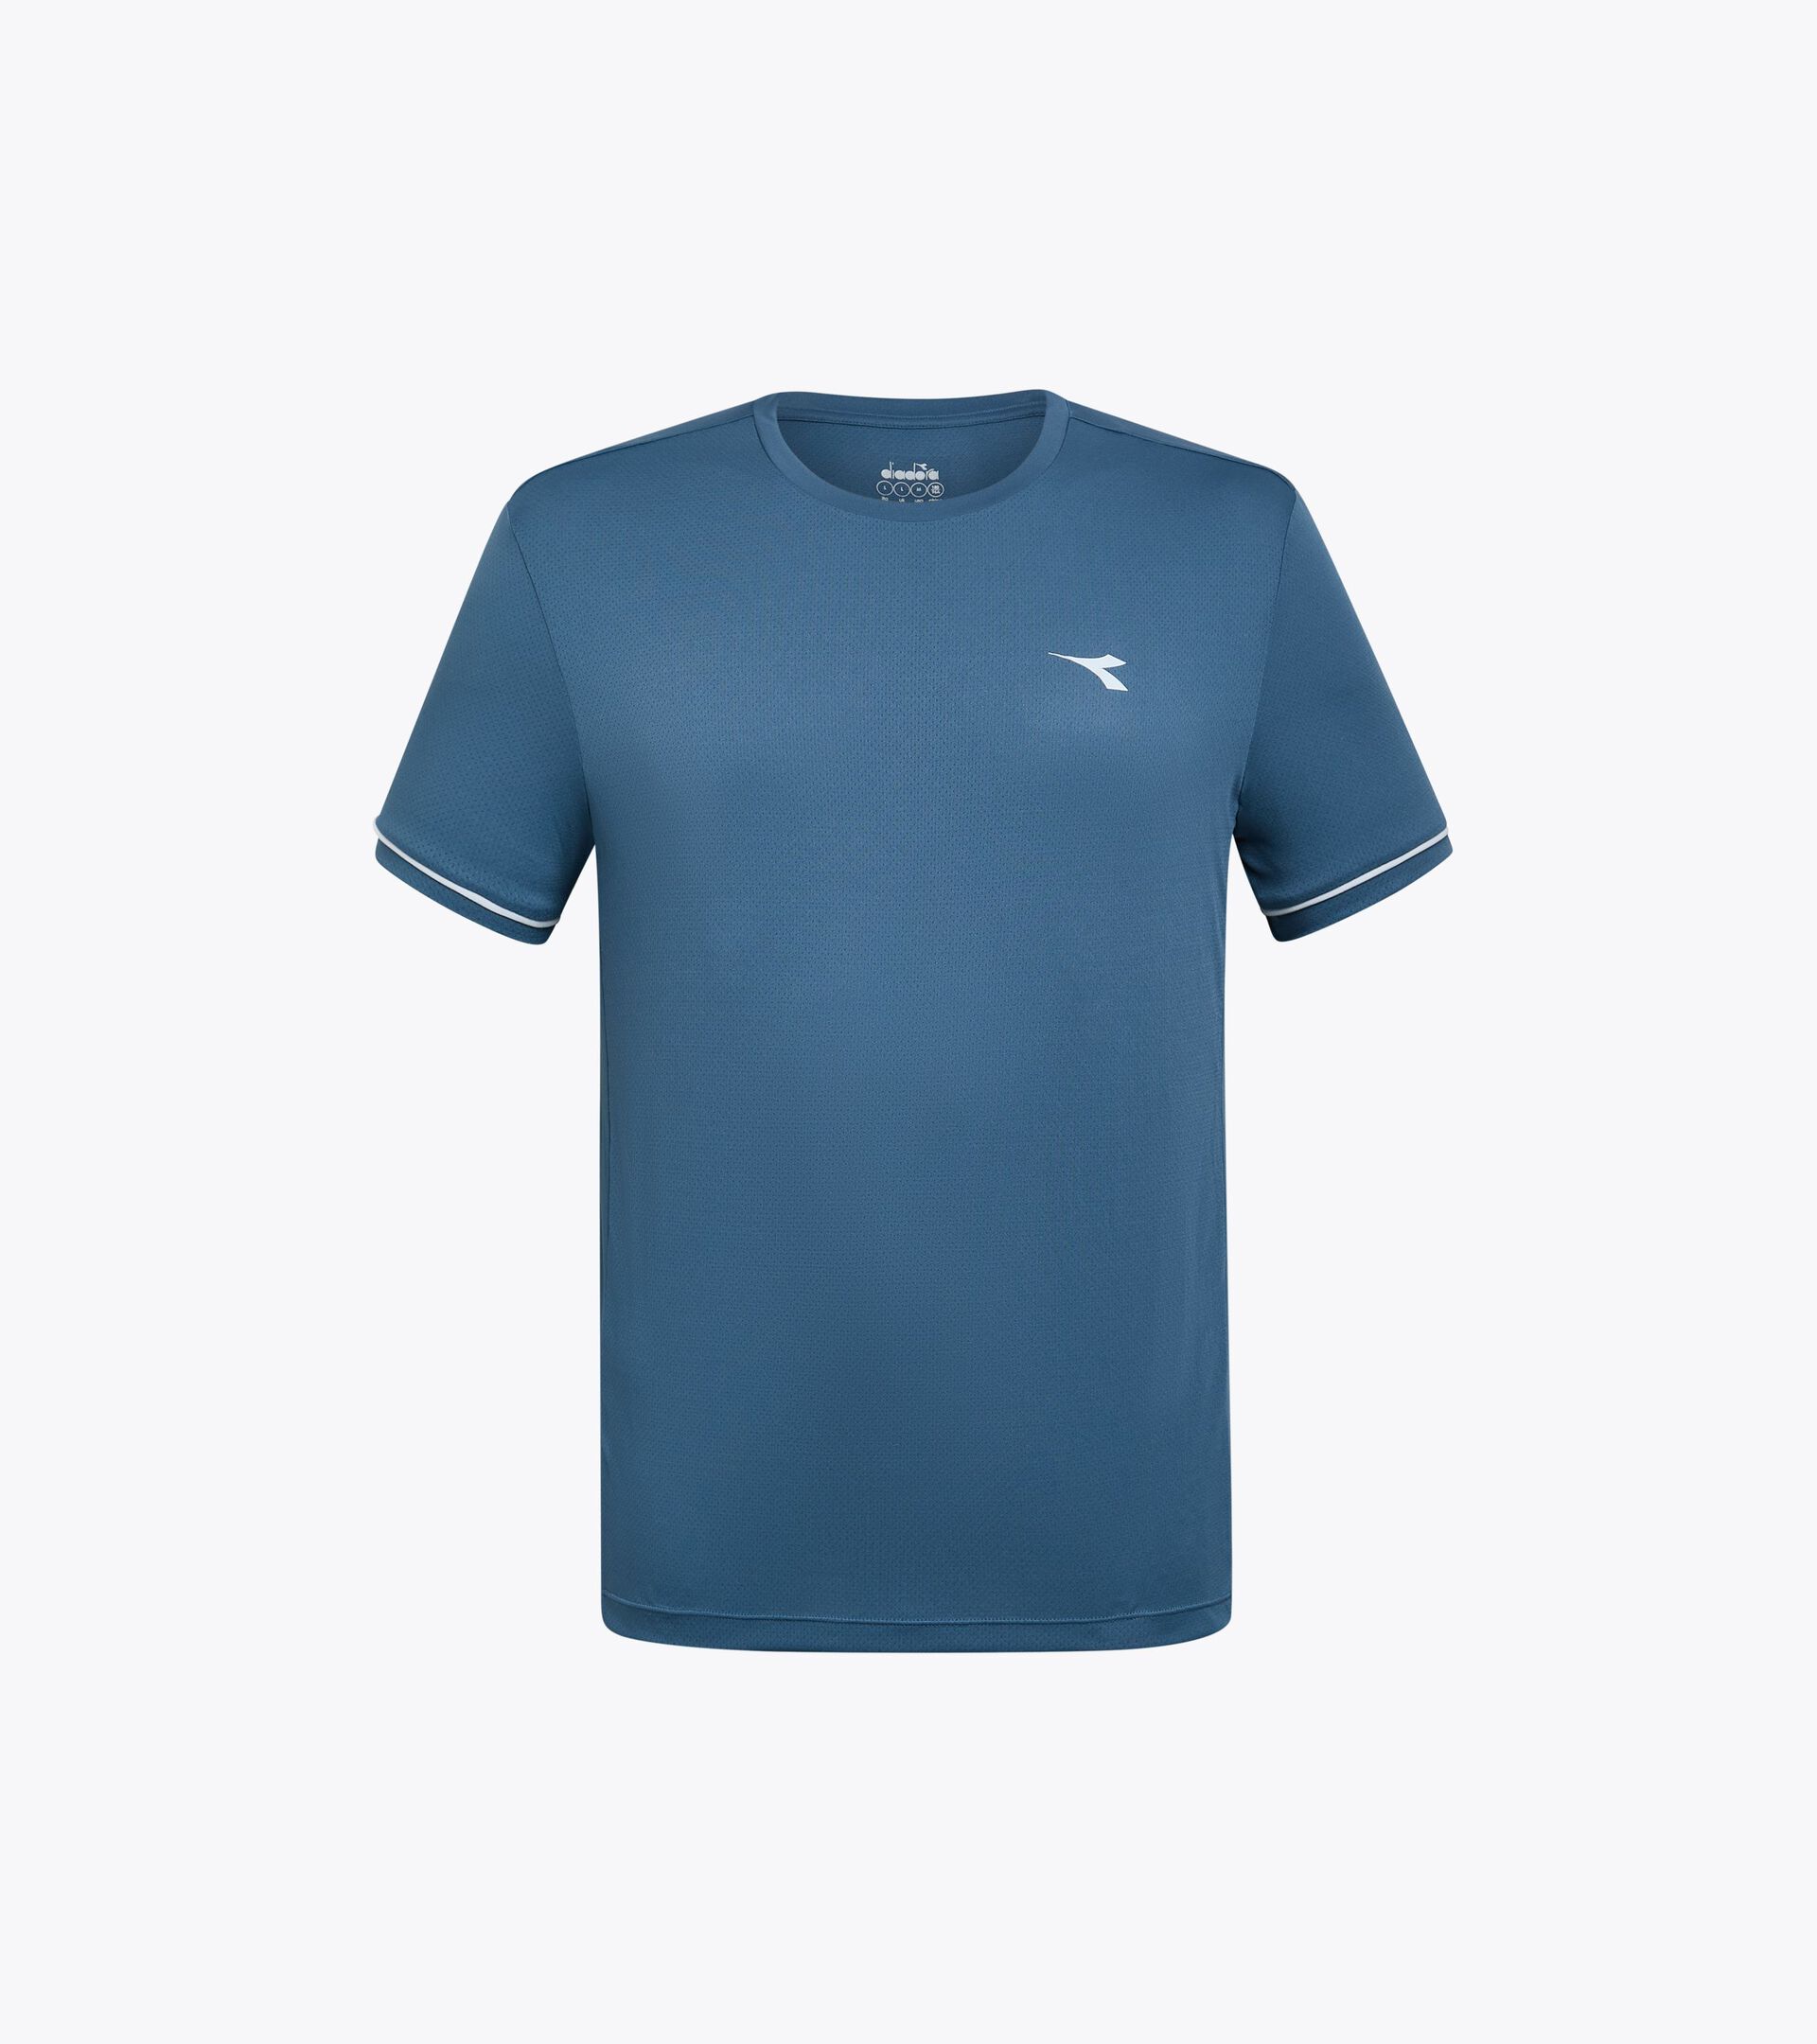 Tennis t-shirt - Men’s
 SS T-SHIRT TENNIS OCEANVIEW - Diadora